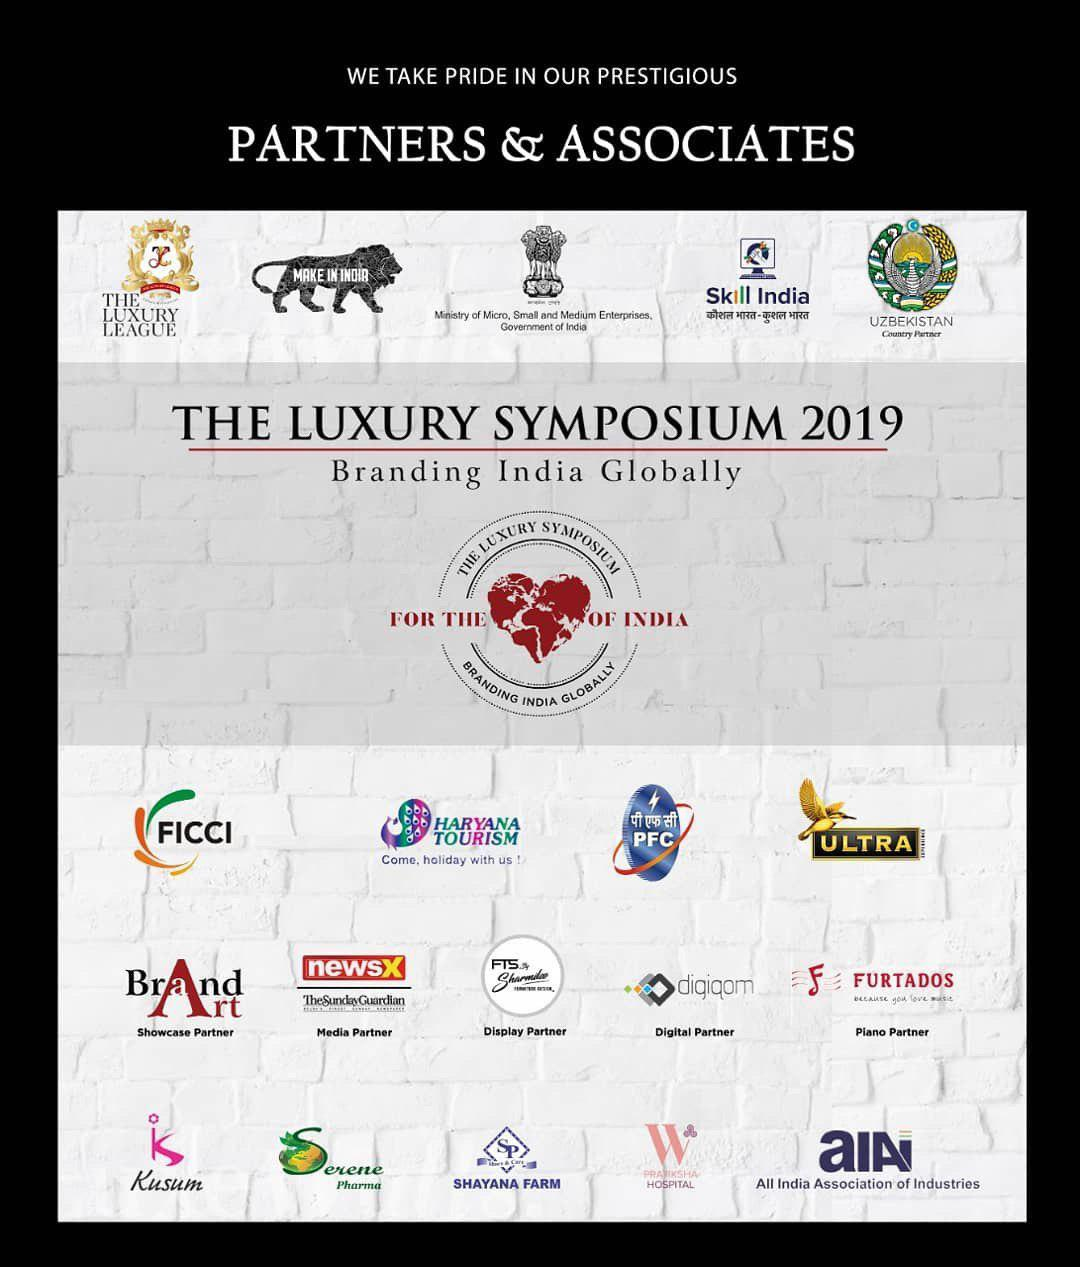 Узбекистан на The Luxury Symposium 2019 в Индии